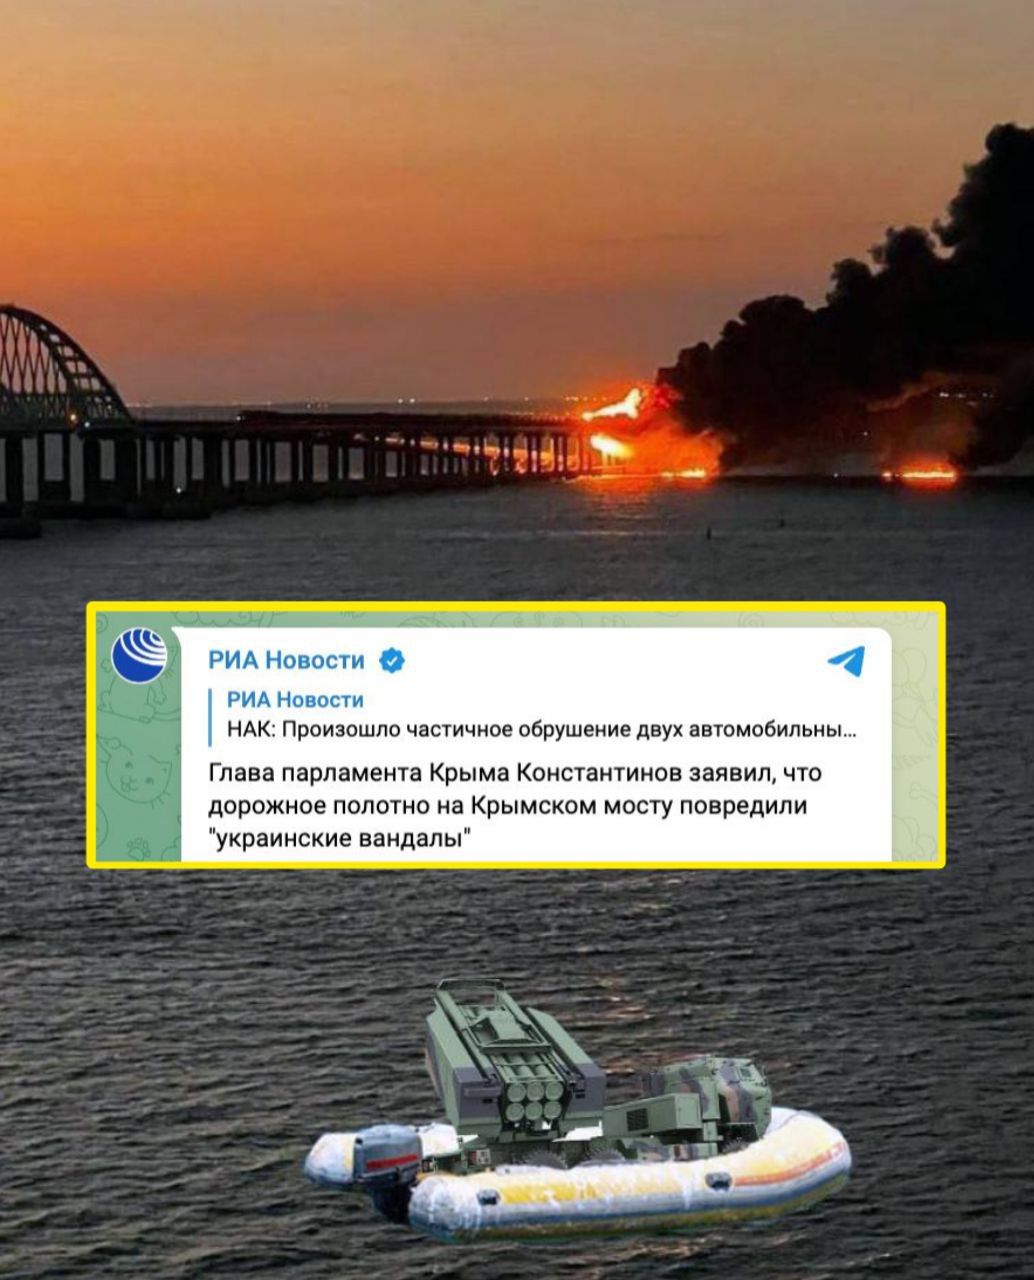 Дорожное полотно на Крымском мосту